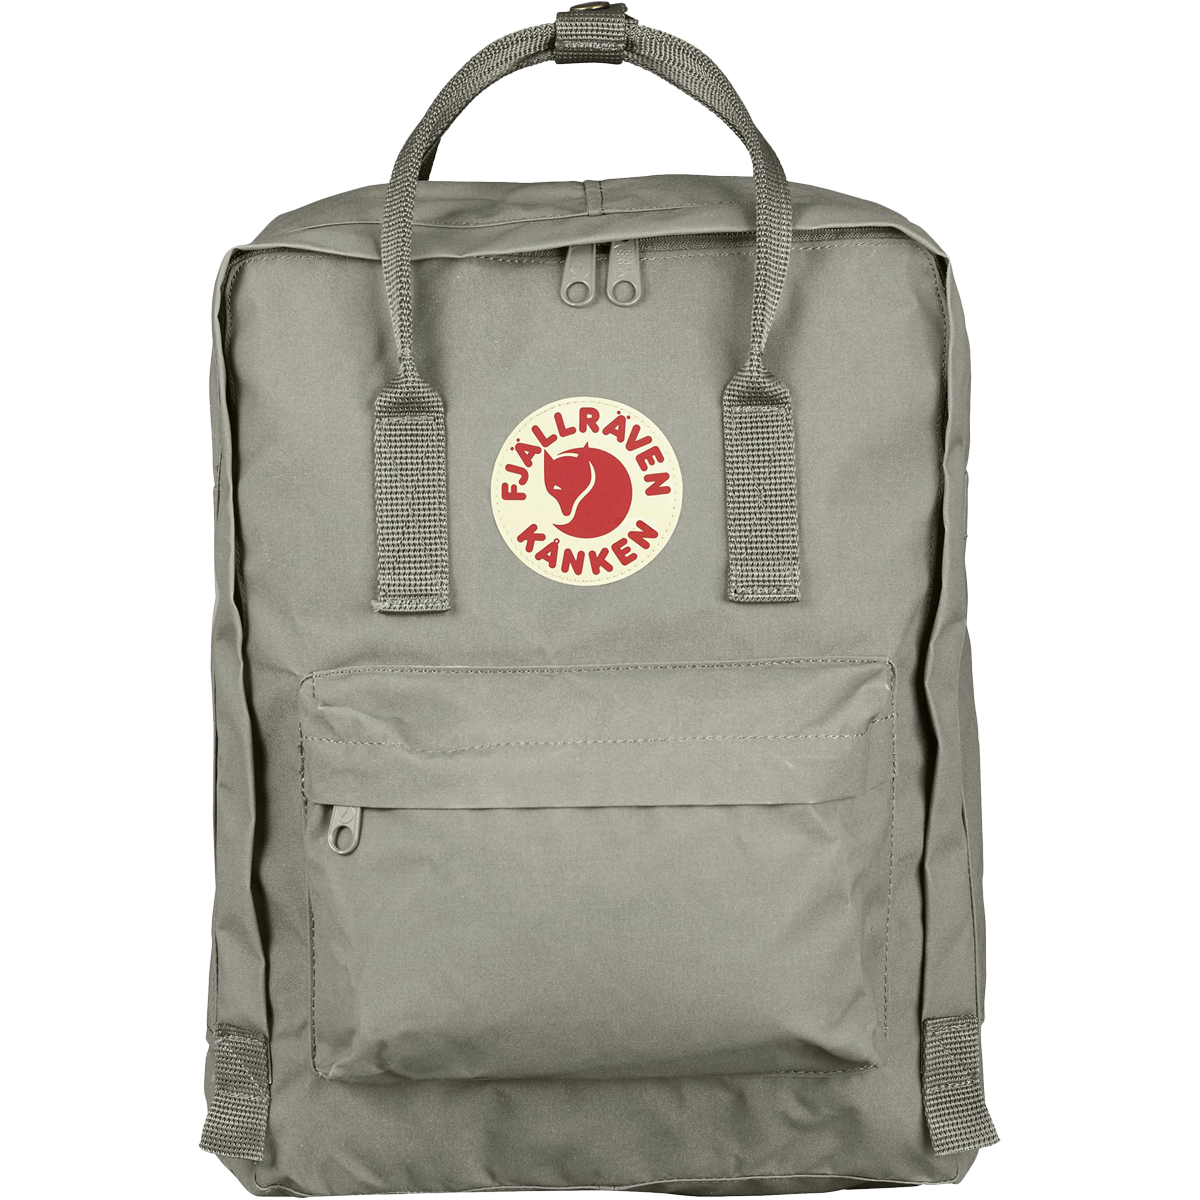 Fjallraven Kanken Sports Backpack, Unisex-Adult, Rowan Red